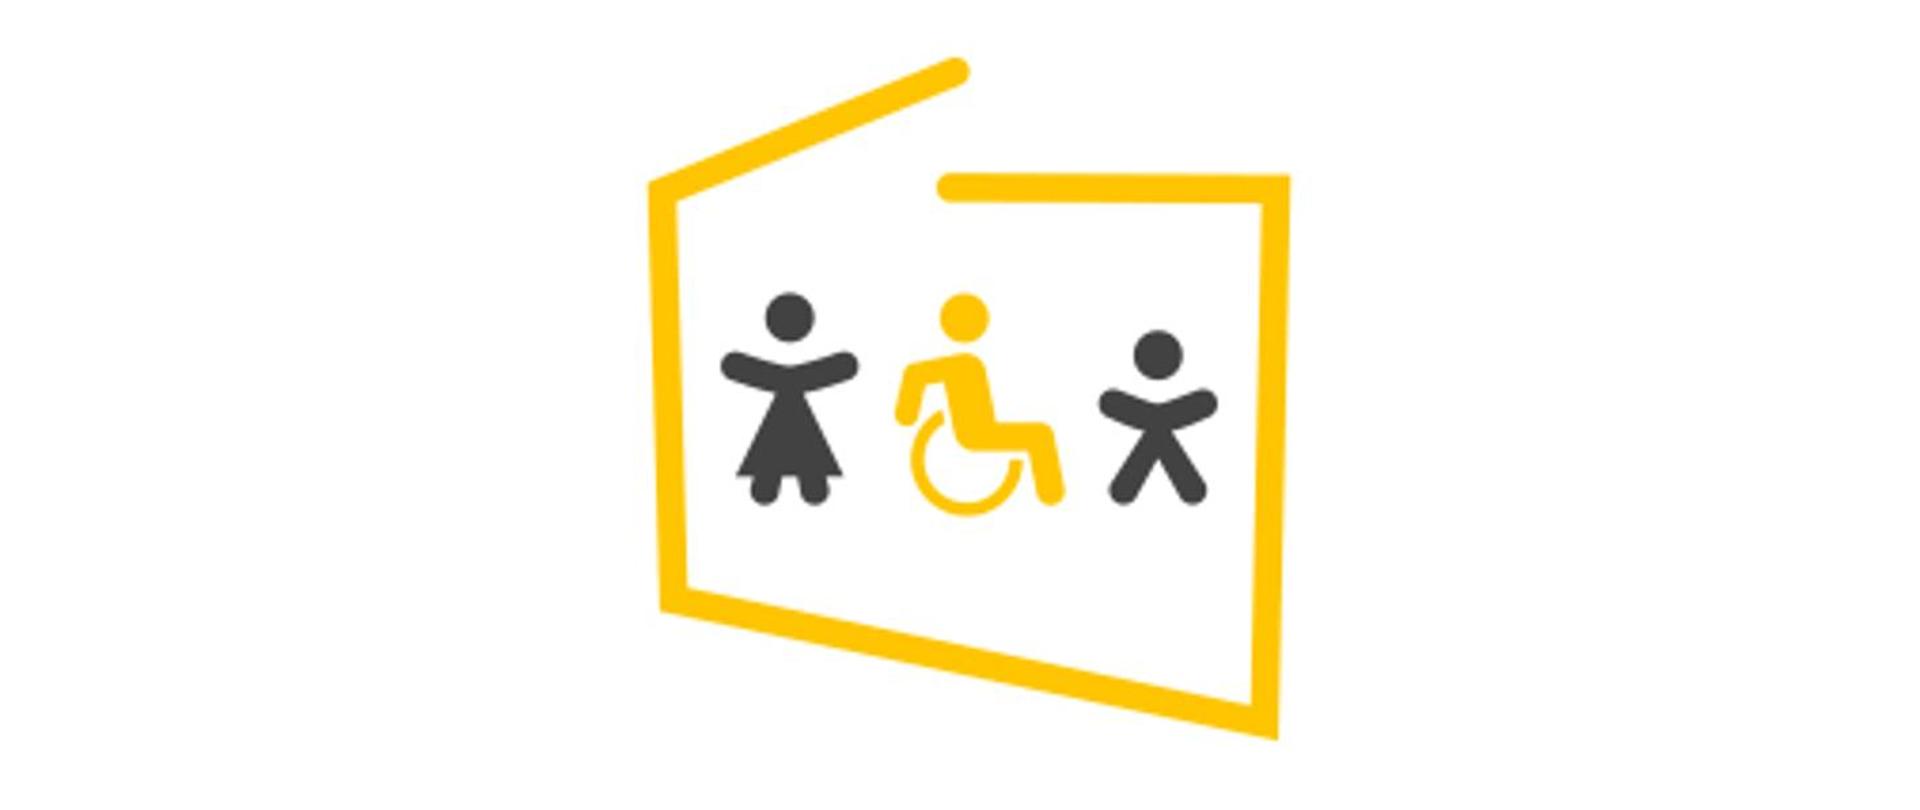 Logotyp akcji "Dostępność plus". Zarys w formie granic Polski w środku emotikony ilustrujące troje ludzi. Dwie stoją, jedna siedzi na wózku inwalidzkim. 